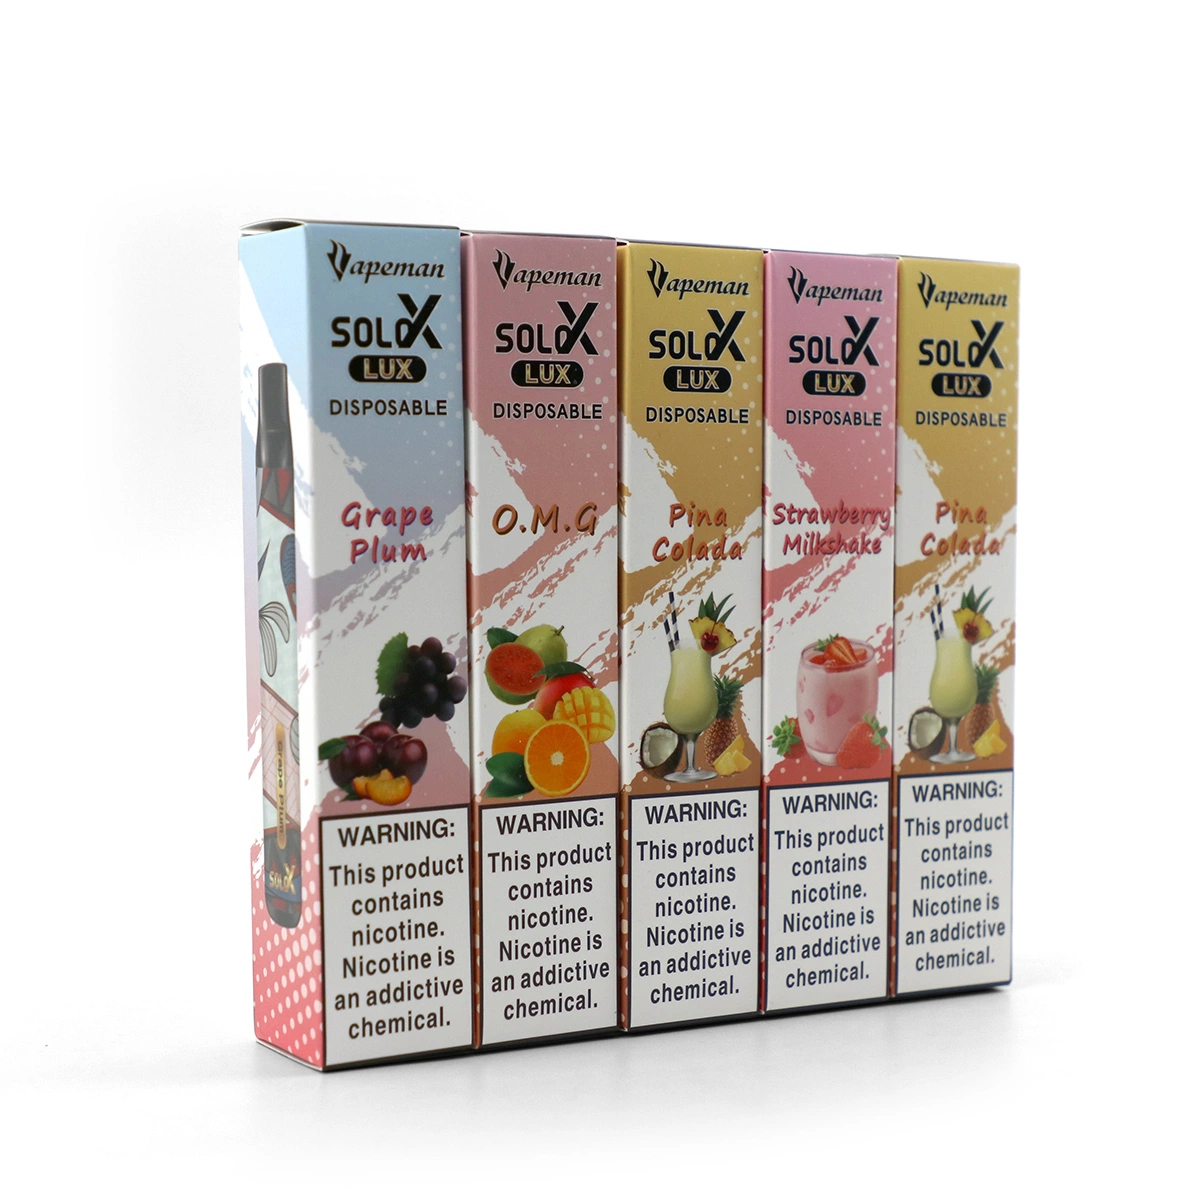 High-Quality Best Flavor Again Vapeman Solo X Dtl Disposable/Chargeable Pod Vape Pen Best Sale in UAE 10 Fruit Flavors